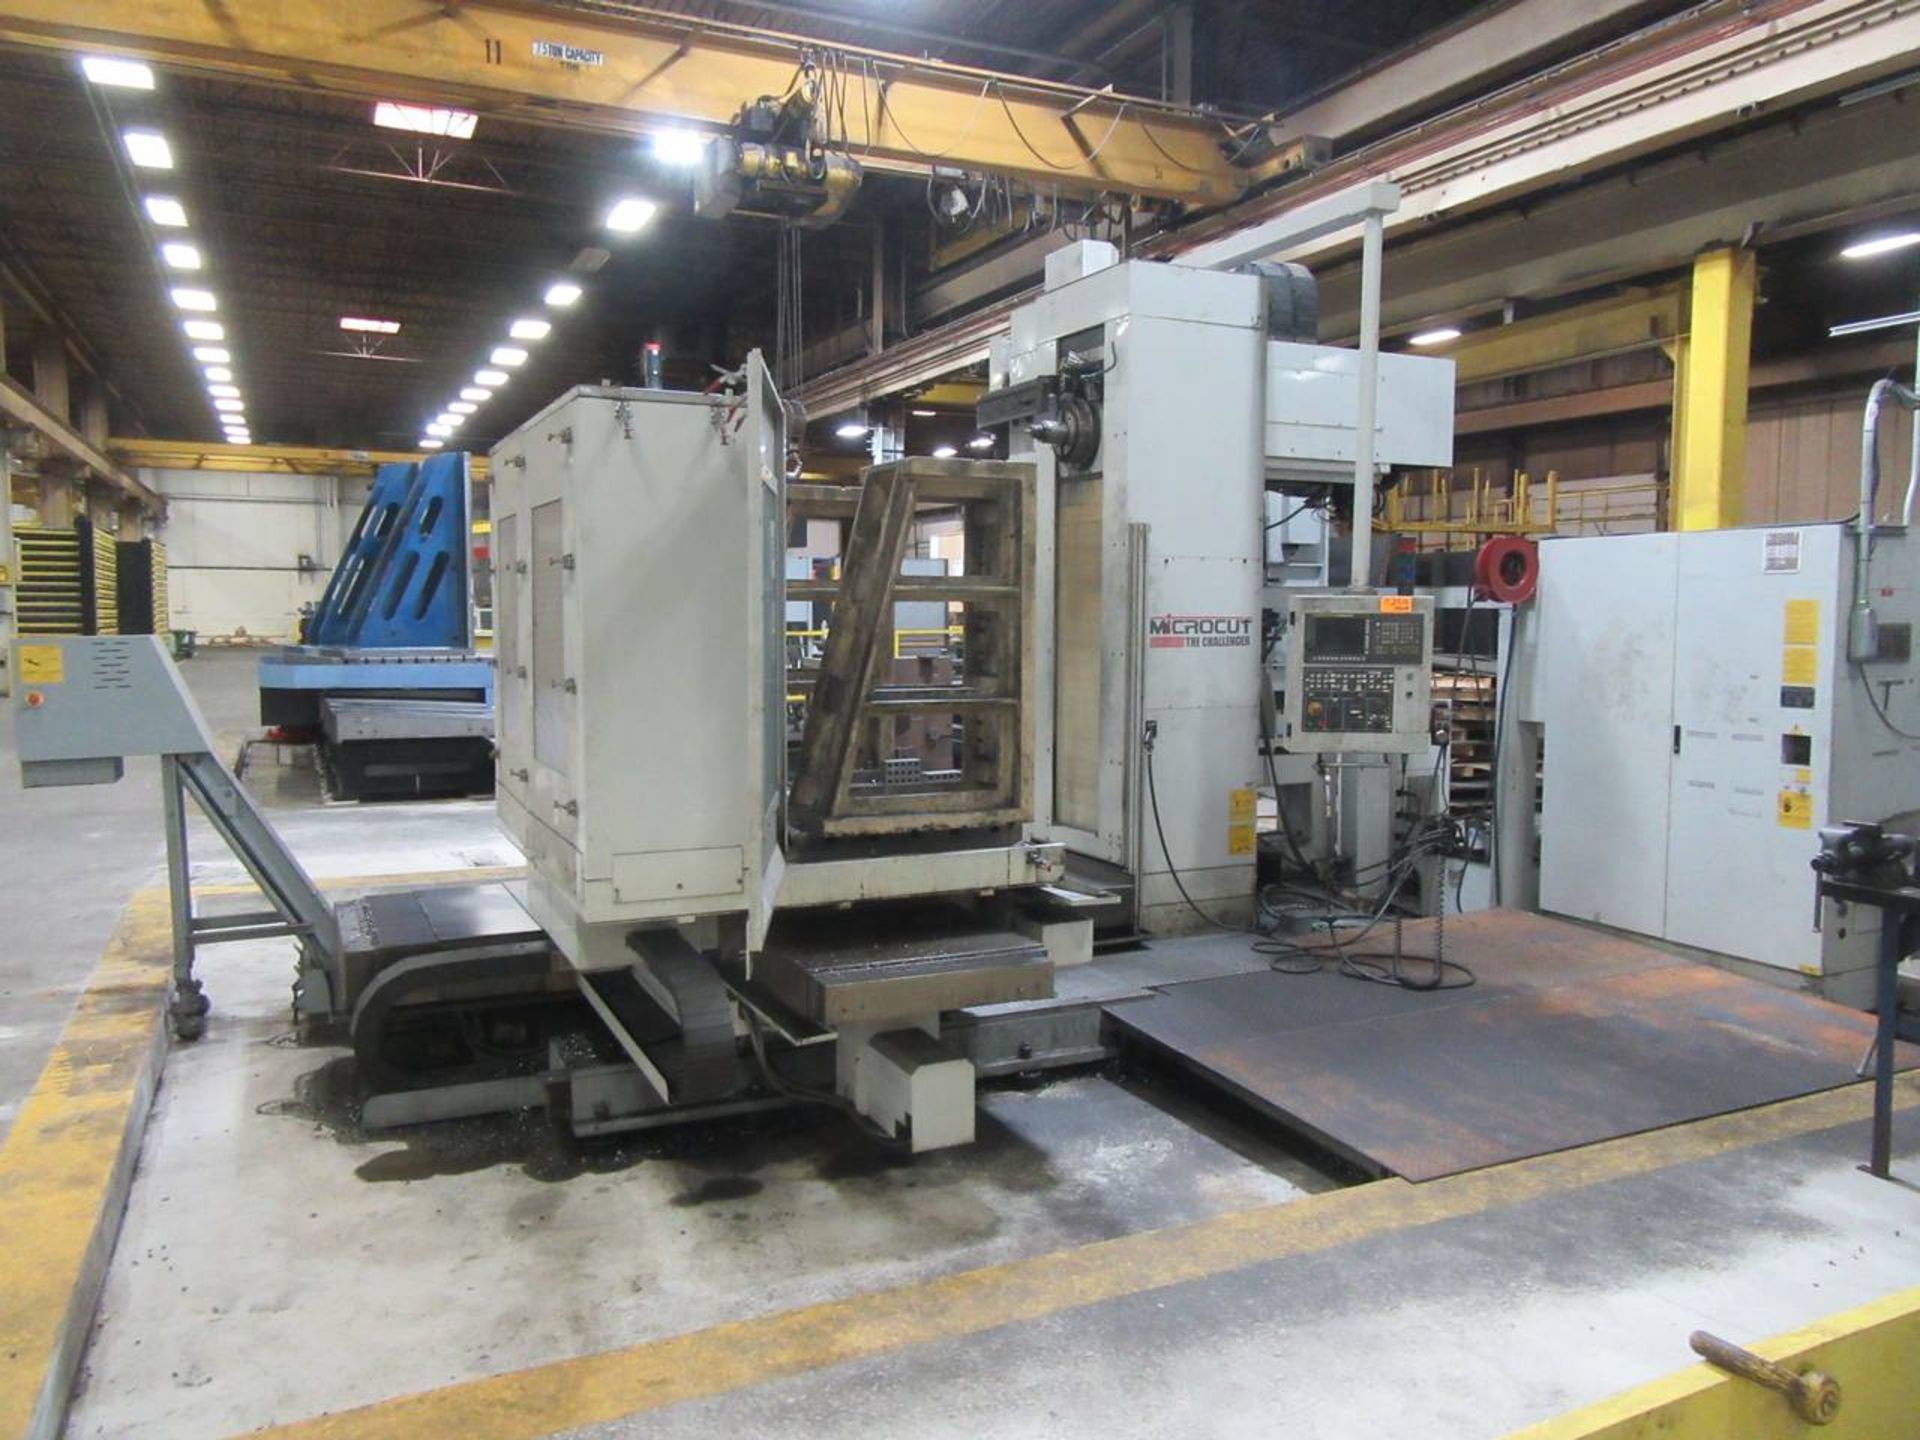 2013 Microcut HBM-4 CNC Boring Mill